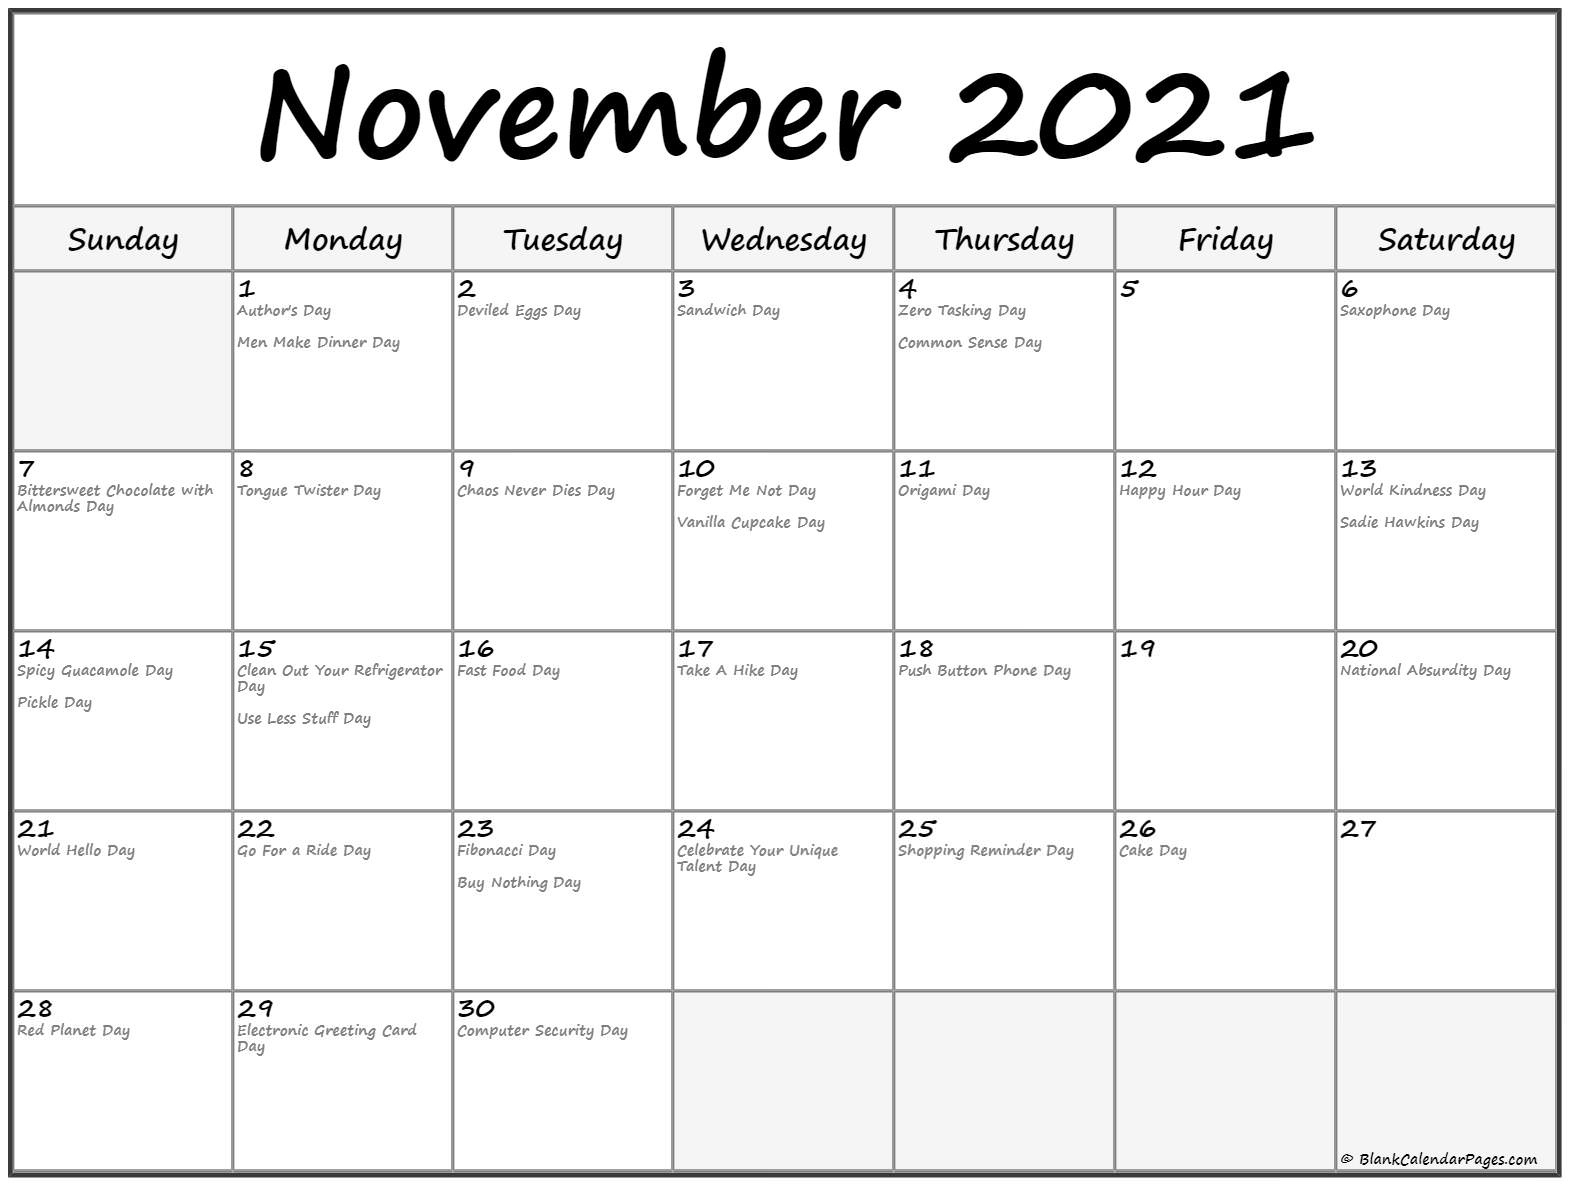 November 2021 Calendar With Holidays November 2021 Bengali Calendar